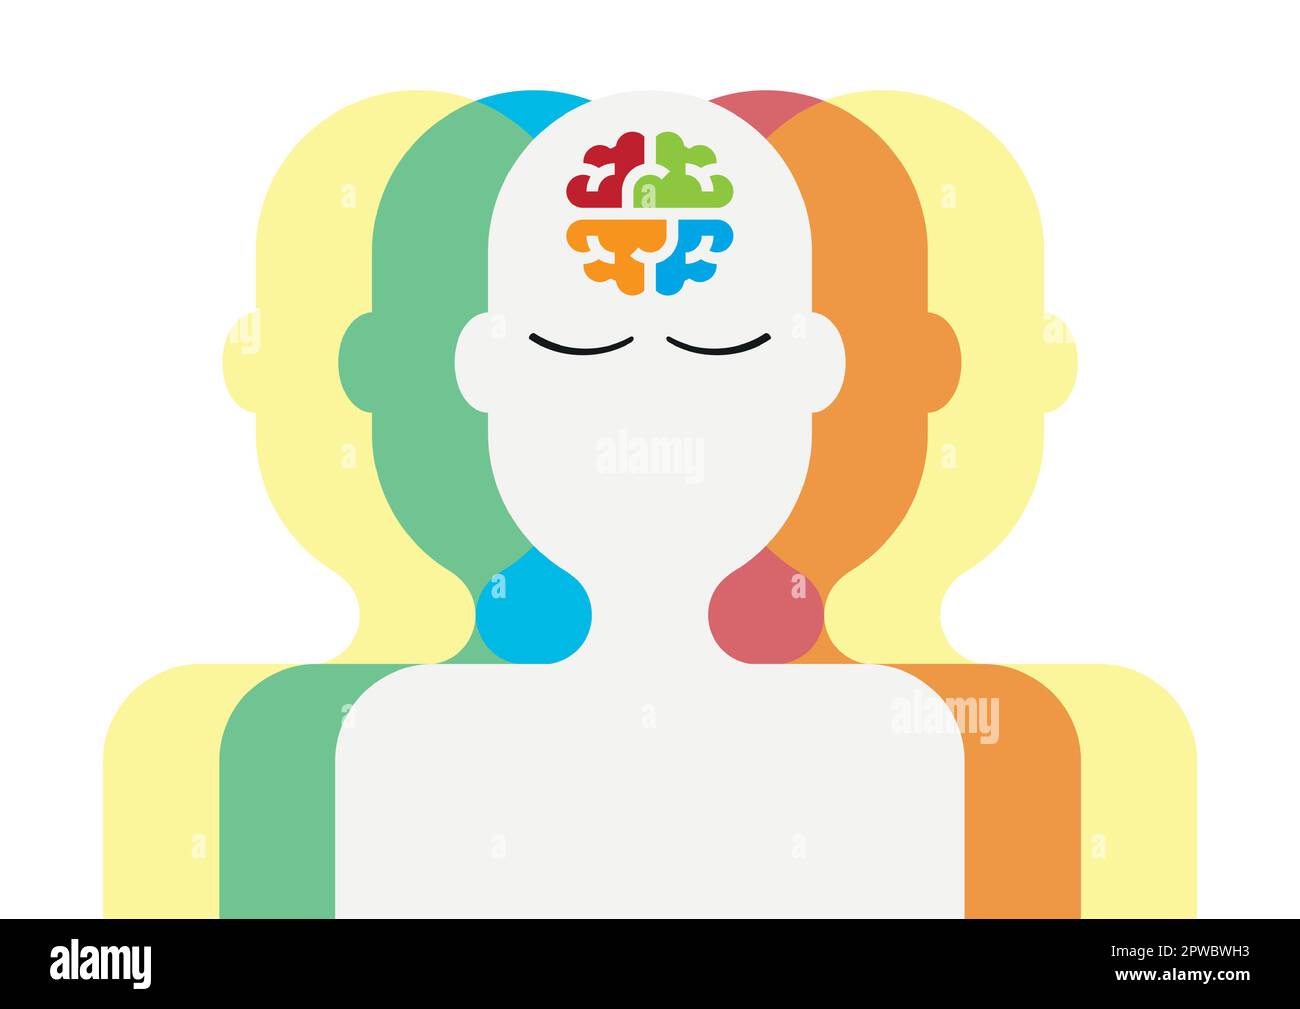 Silhouette de la personne autiste, son esprit est représenté par un puzzle de différentes couleurs Illustration de Vecteur